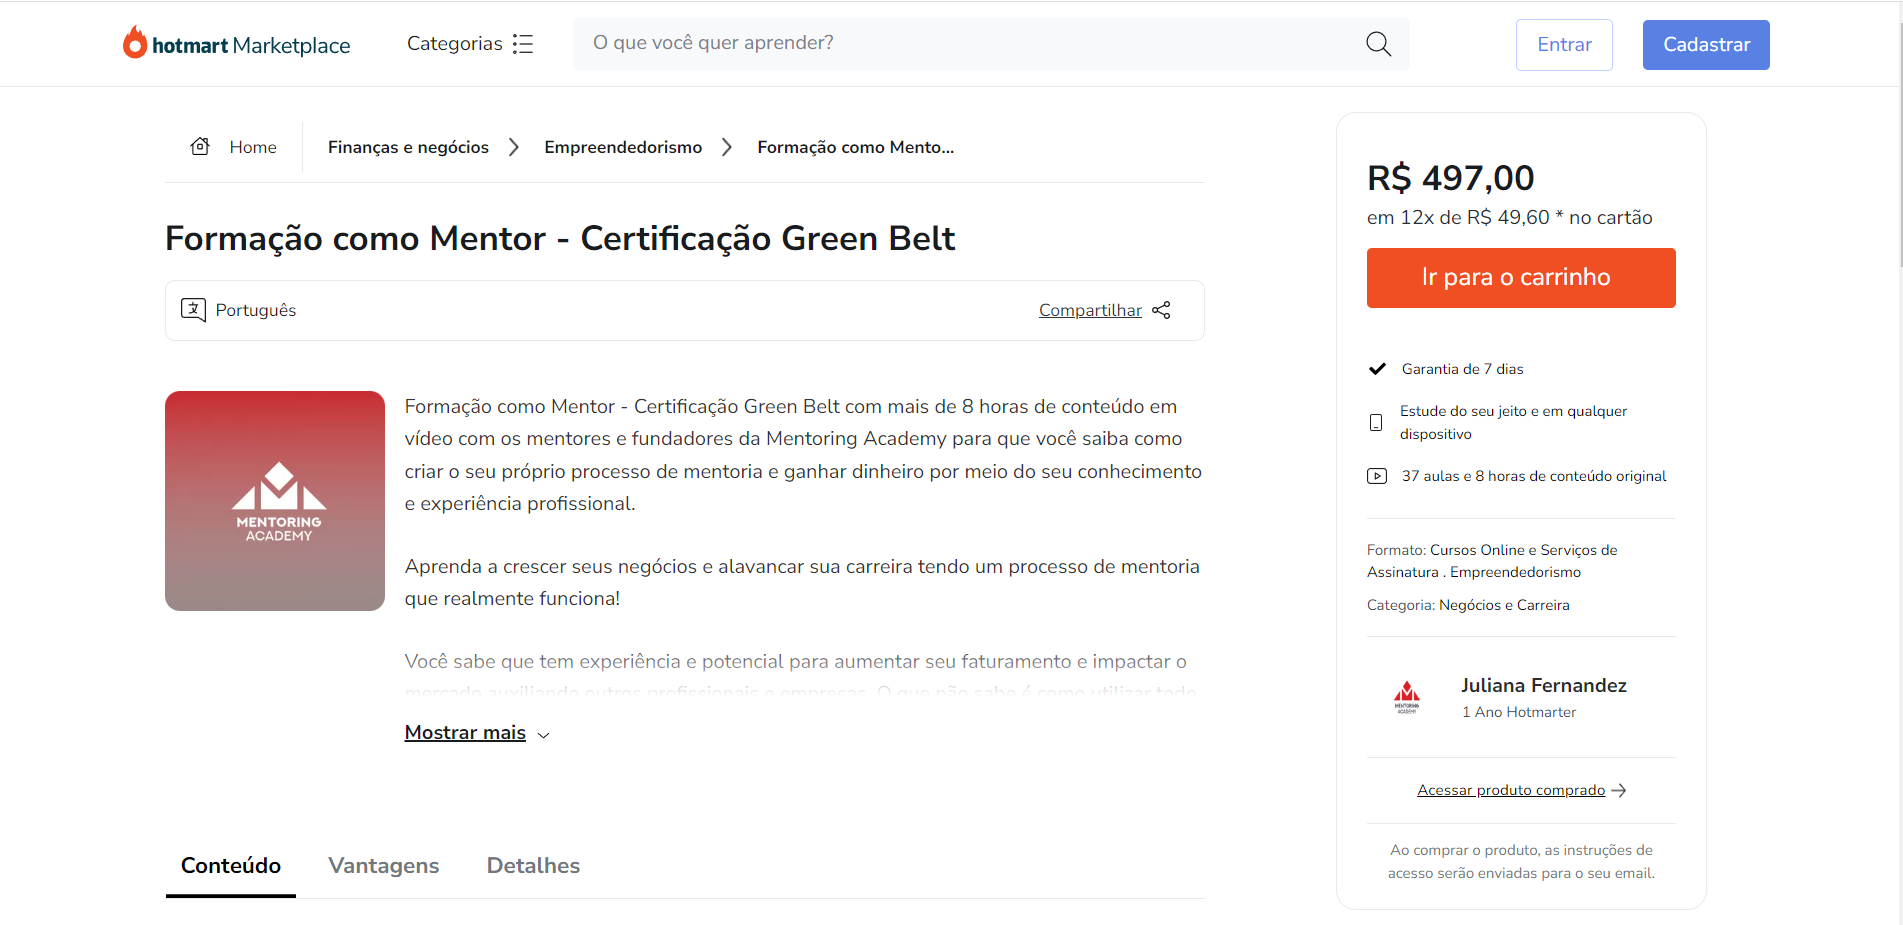 Formação como Mentor Certificação Green Belt - Juliana Fernandez